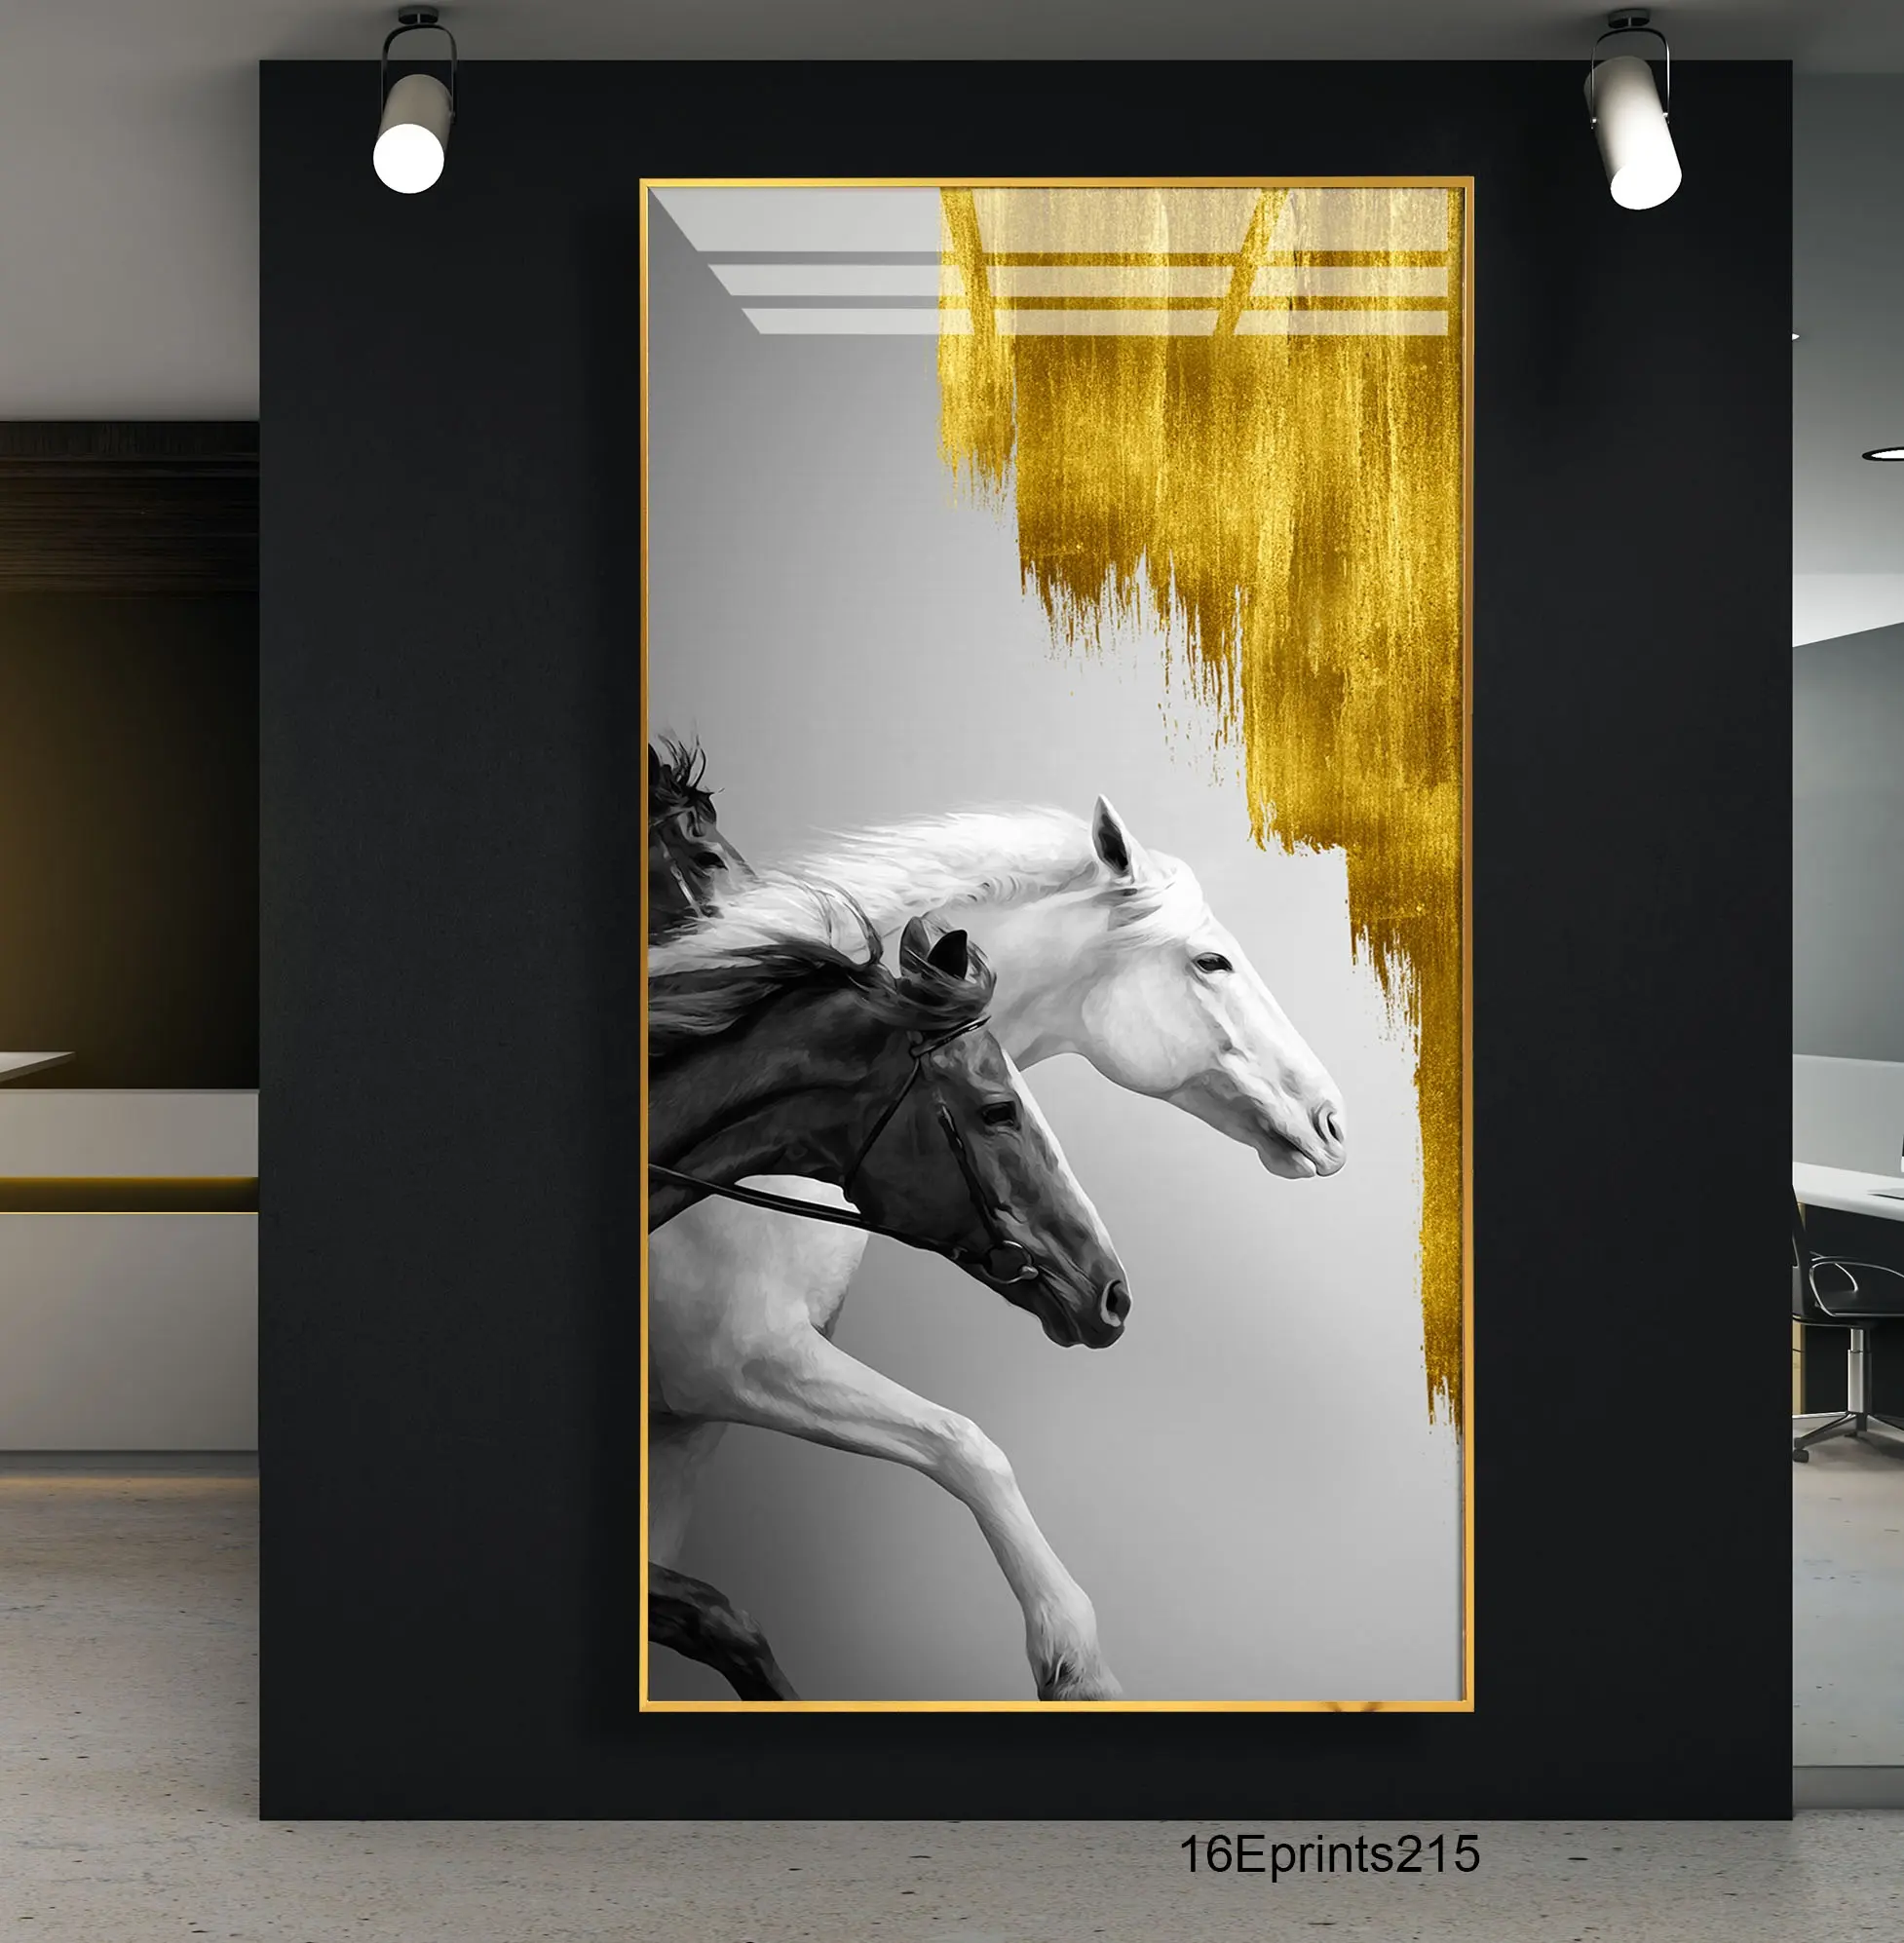 تصميم مخصص لوحات فنية لجدار الحصان لوحات مناظر طبيعية لوحات كريستال زجاجية حيوانات وفنون جدارية